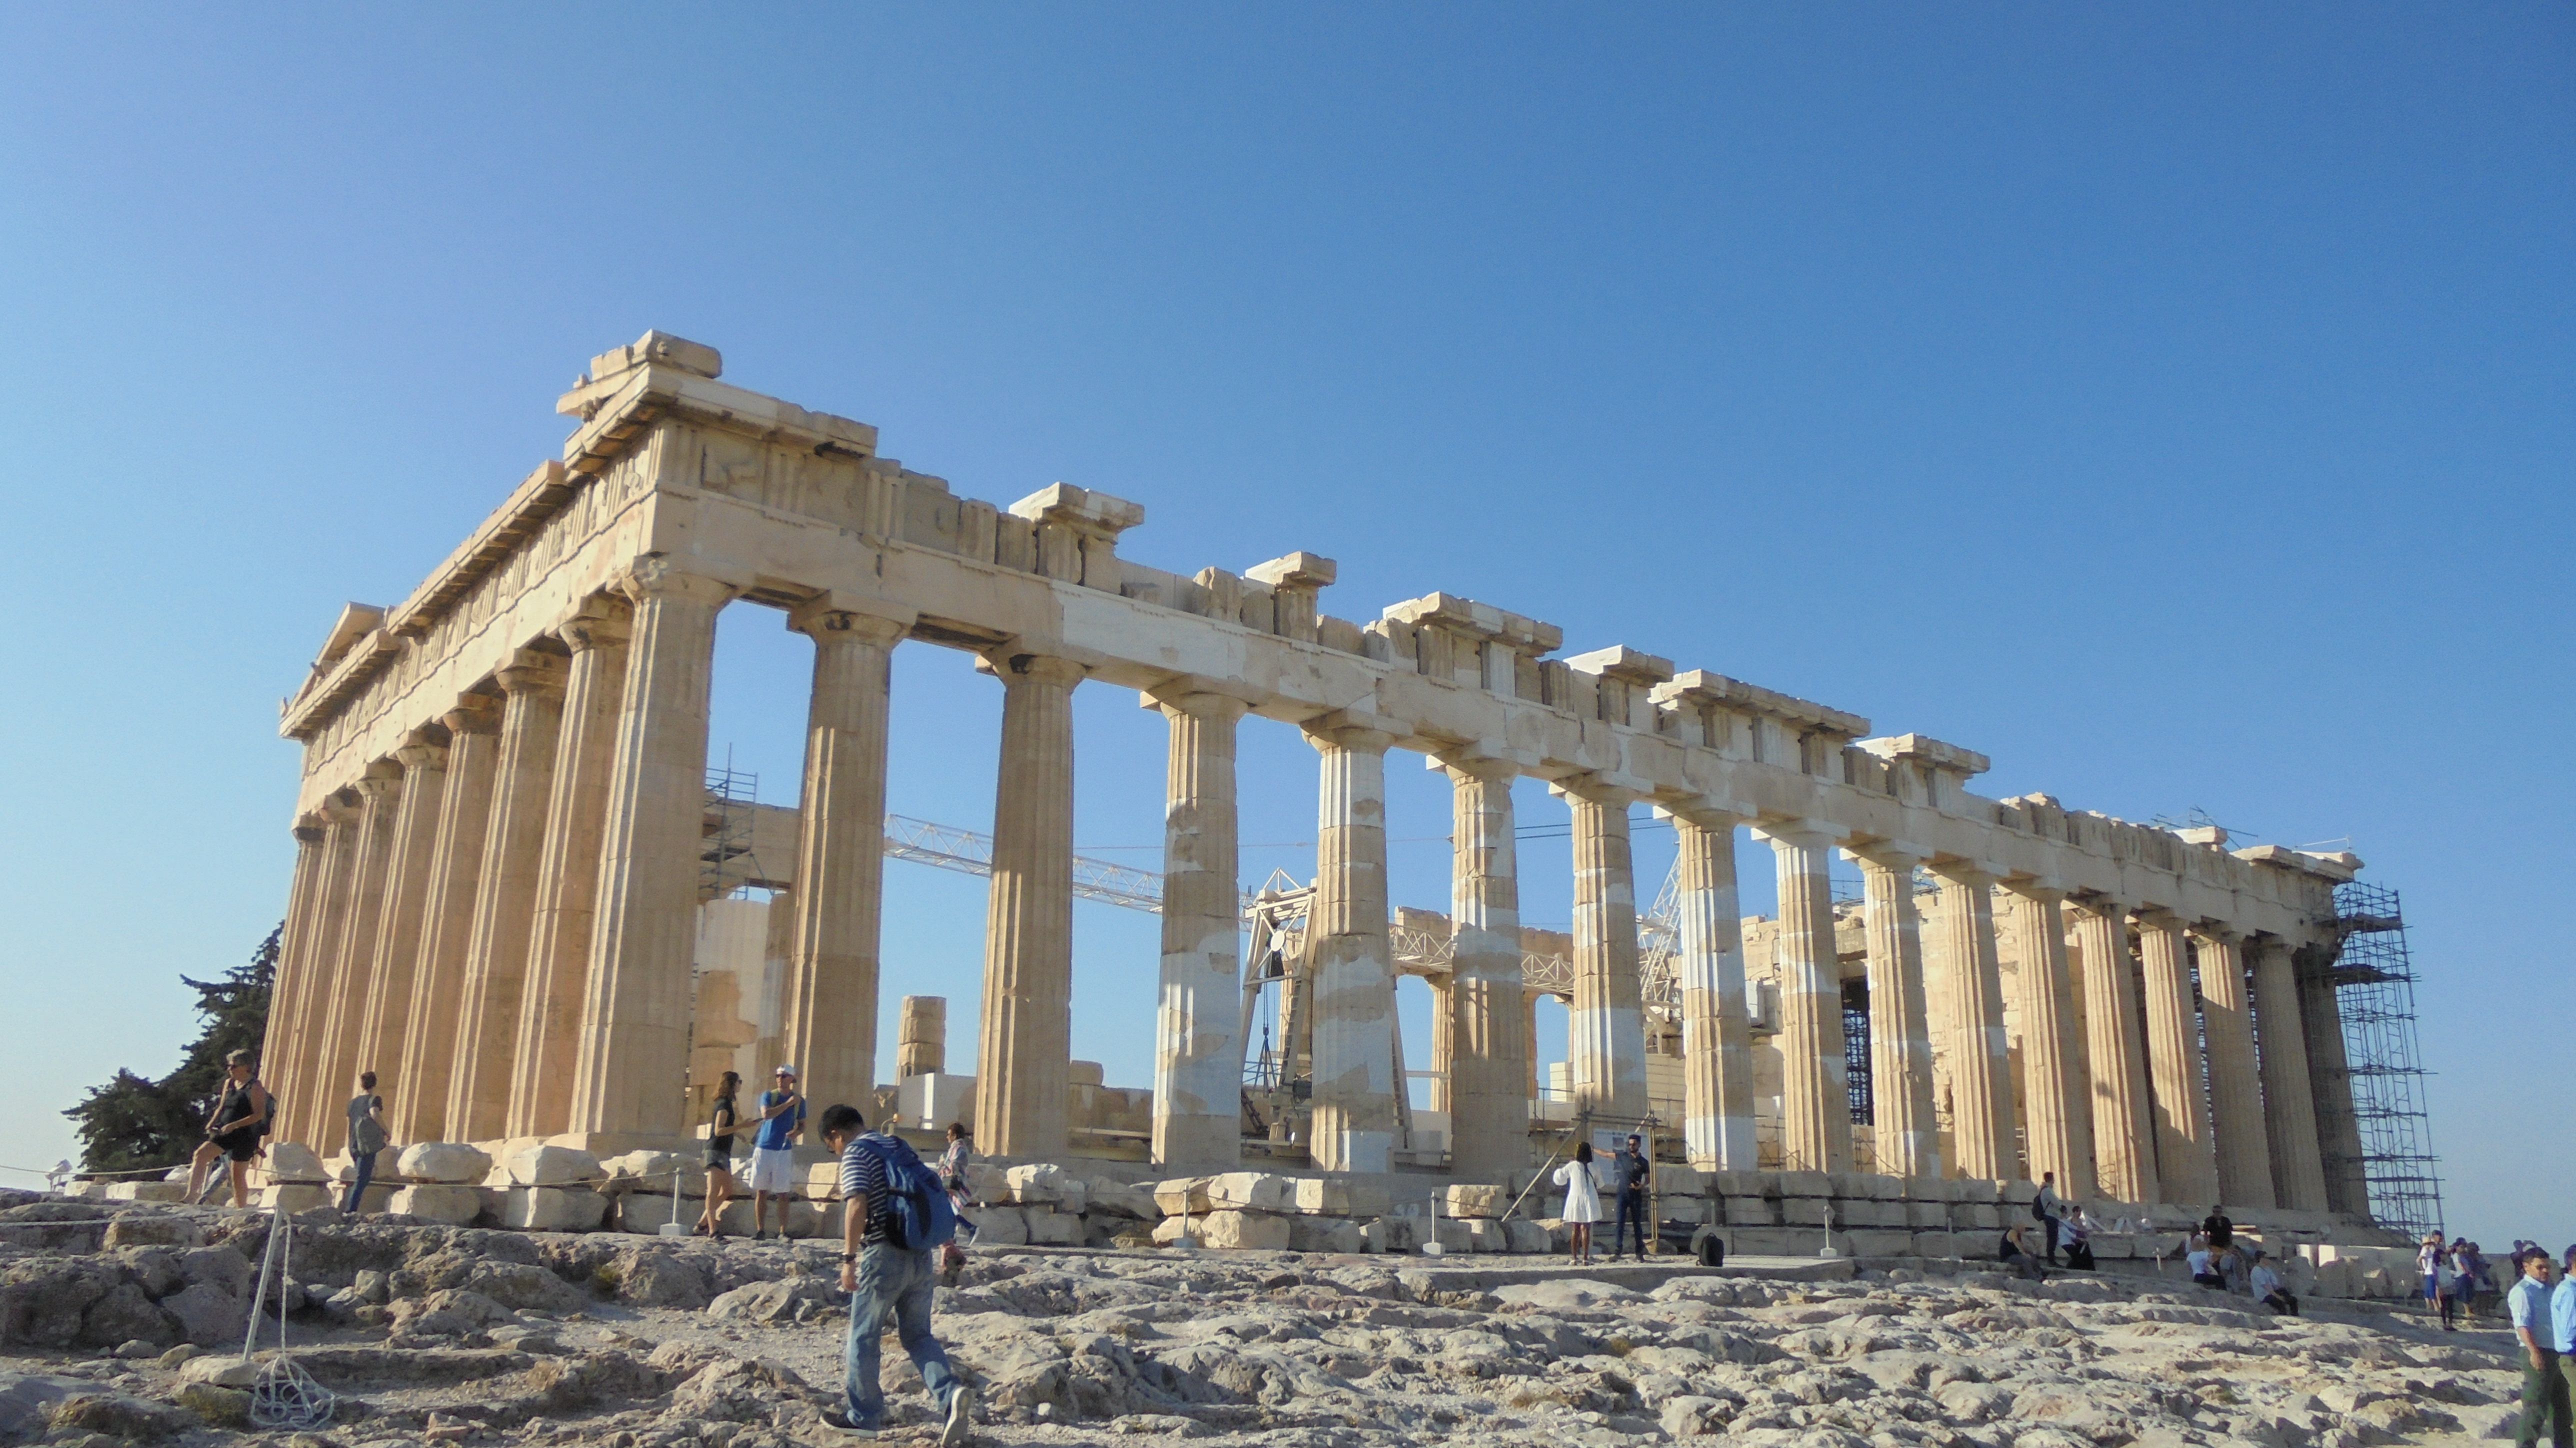 Partenón en la Acrópolis de Atenas (Grecia) (@mibaulviajero)